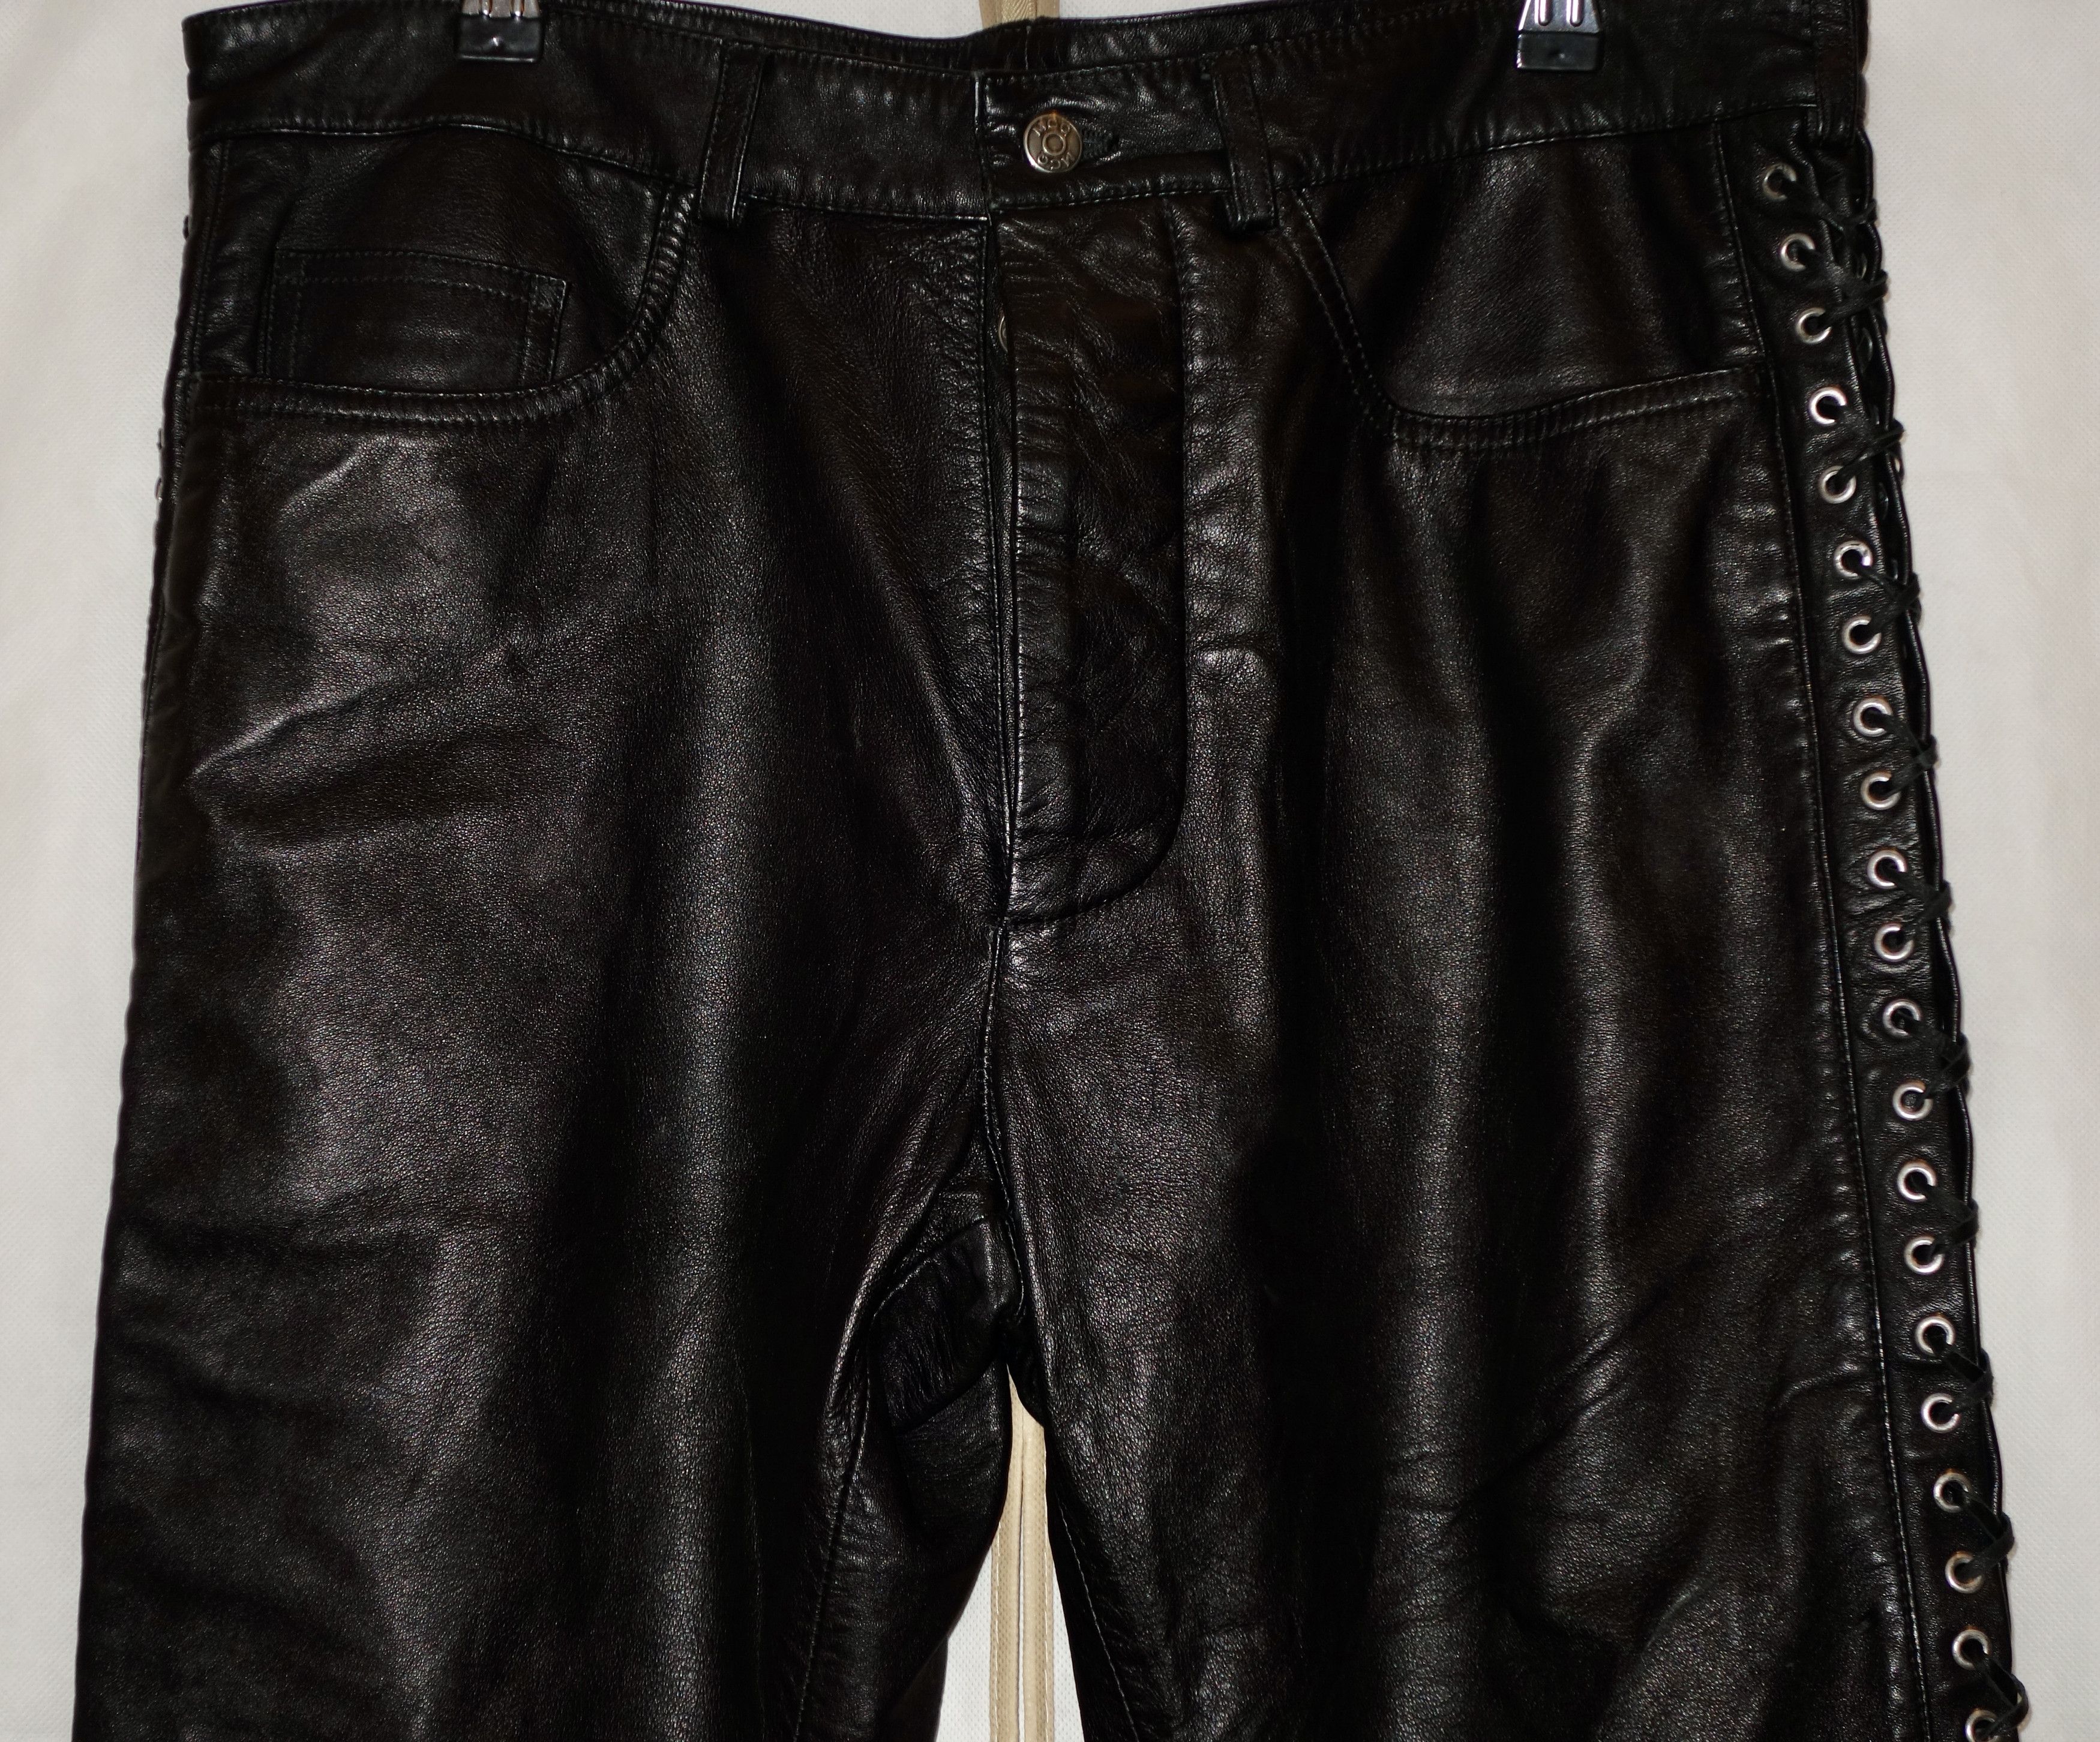 McQ Alexander McQueen Leather S&M / Biker / Lace Up Jeans Size US 32 / EU 48 - 5 Thumbnail